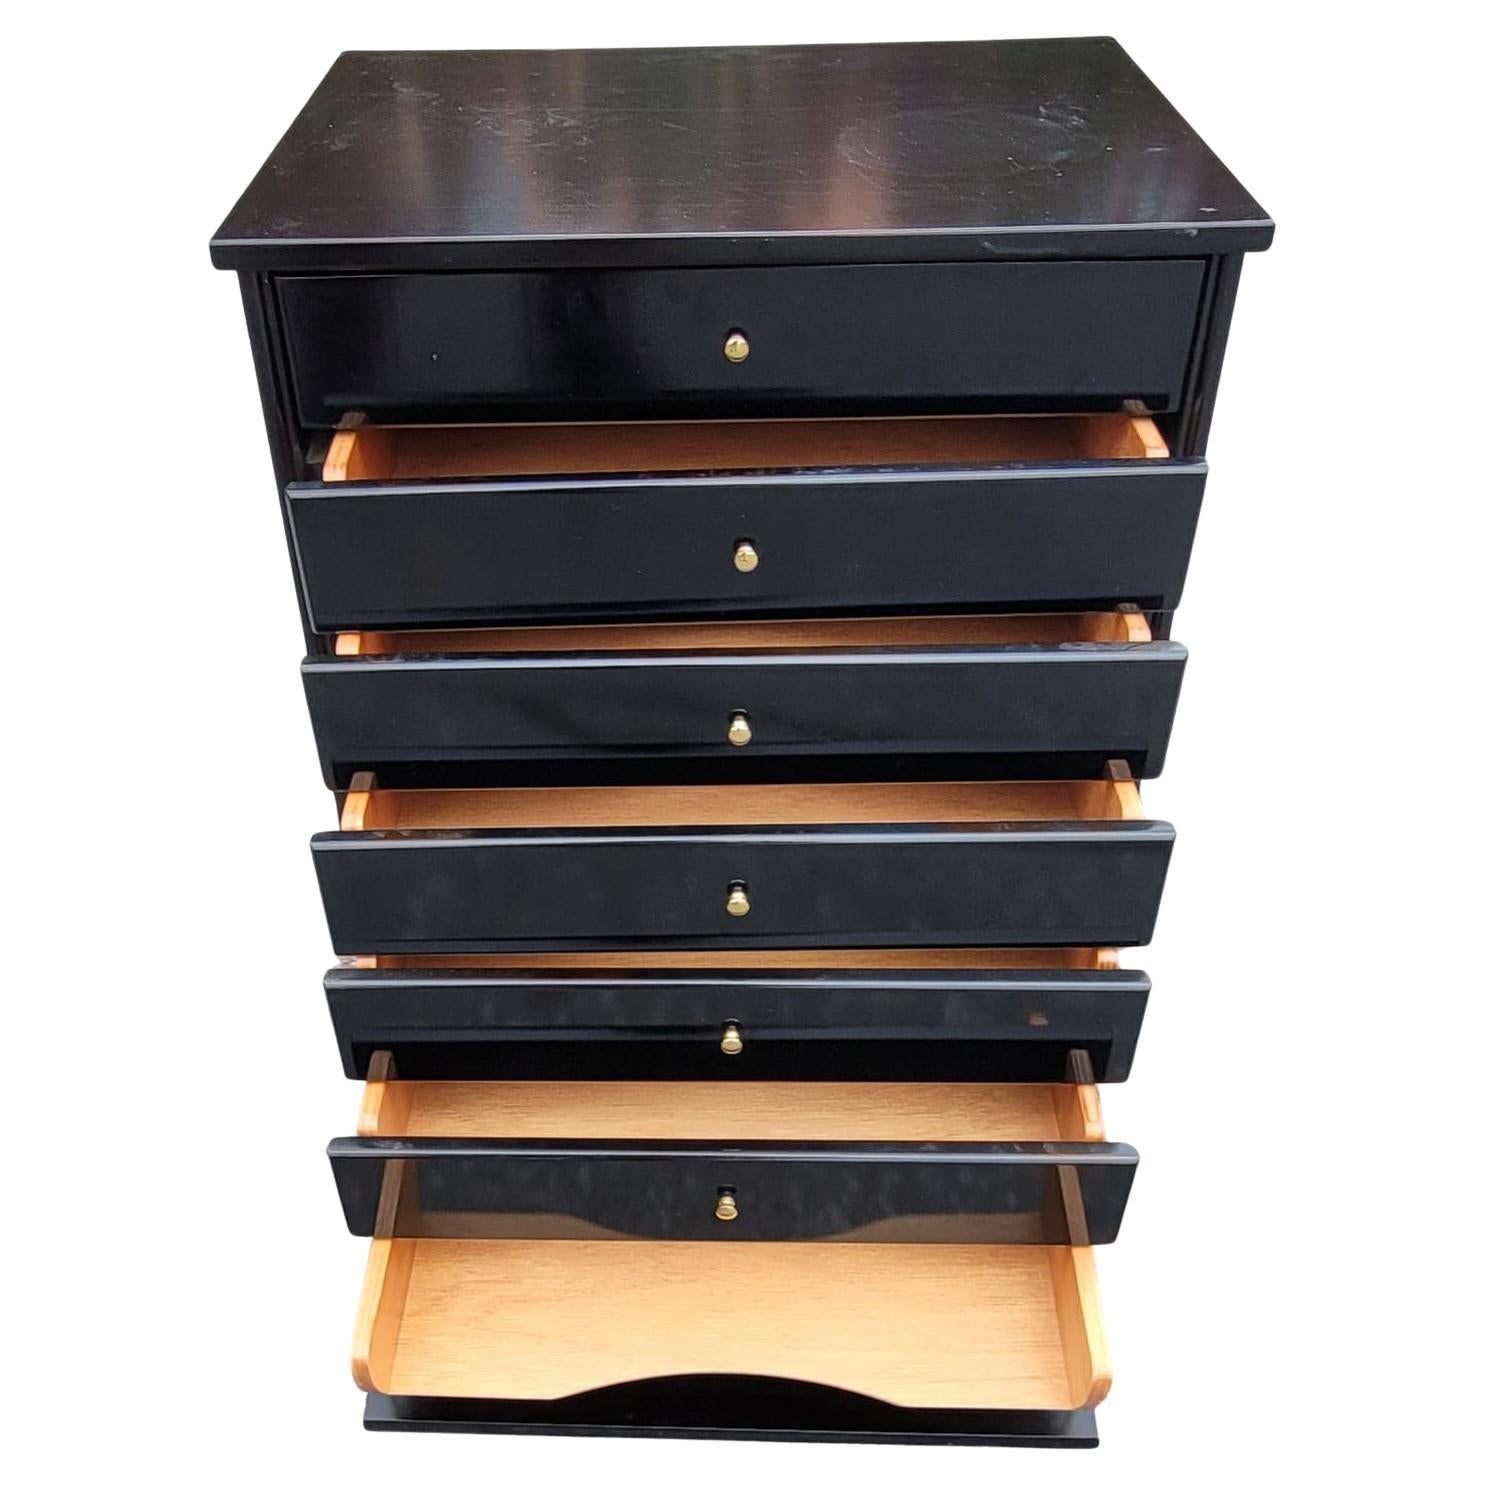 Un meuble à 7 tiroirs en bois ébénisé de John Austin pour les imprimés ou les partitions de musique en excellent état.
Mesure 20,1 pouces de largeur, 15,75 pouces de profondeur et mesure 27 pouces de hauteur.